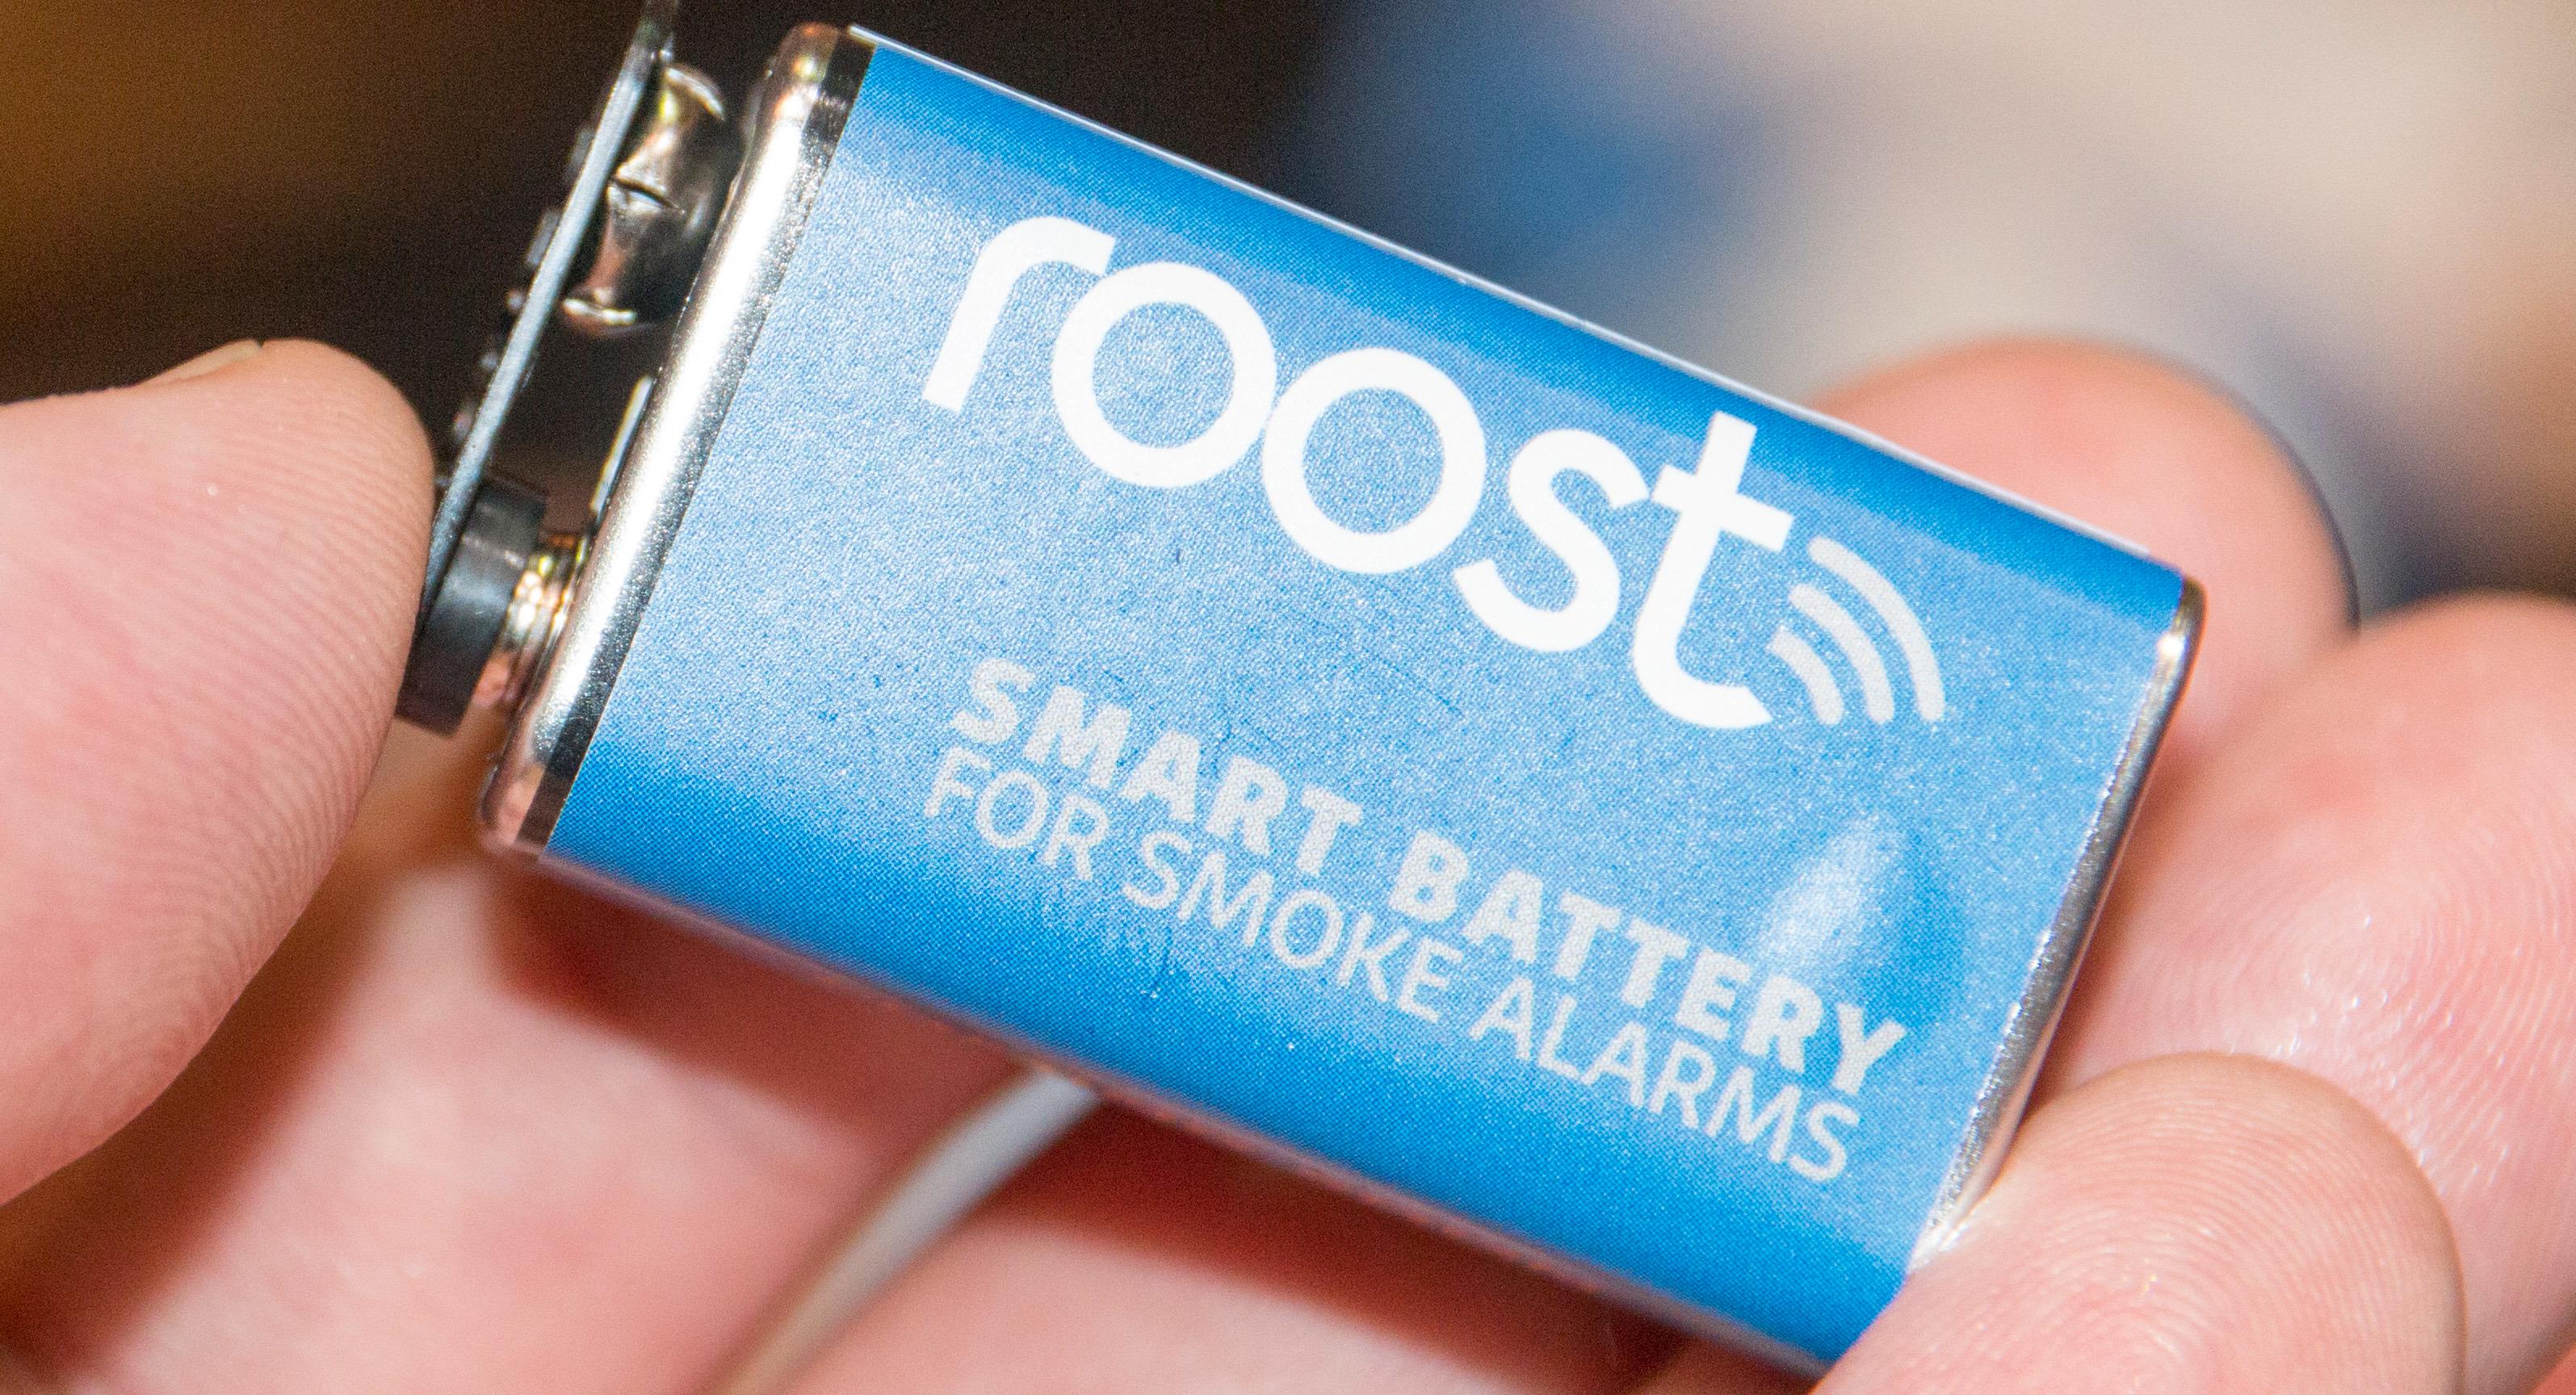 Dette batteriet gjør gamle røykvarslere smarte